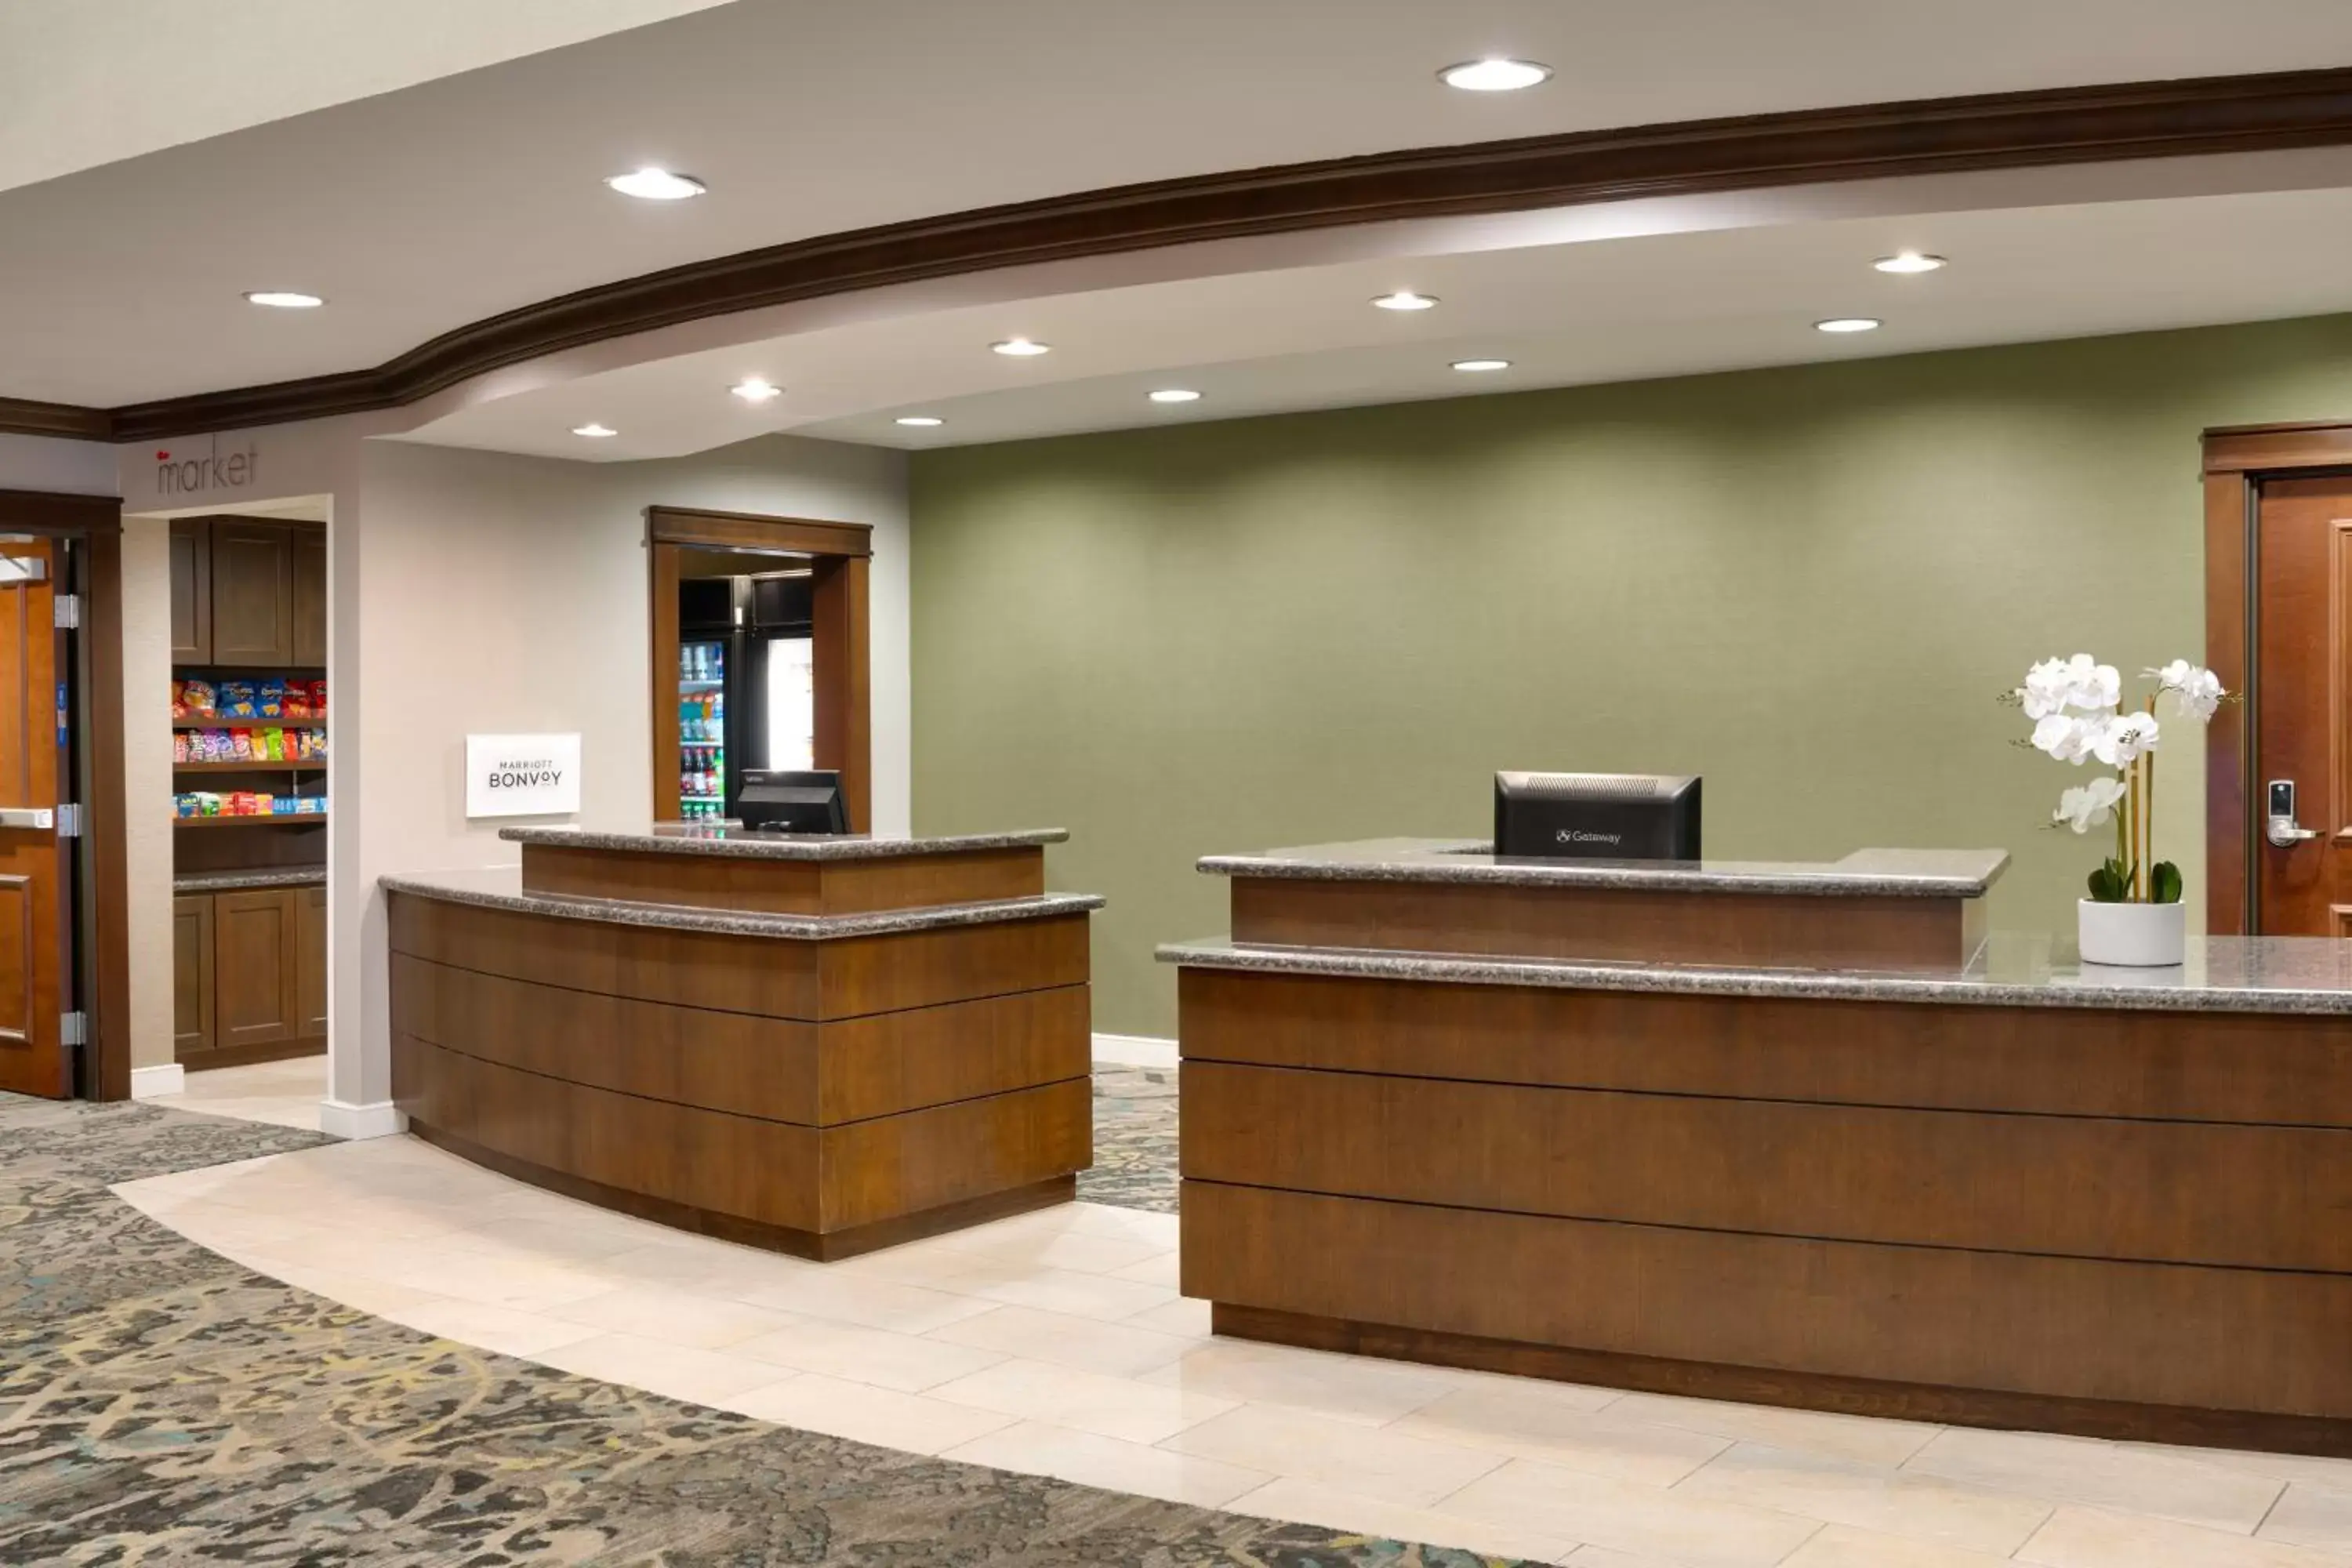 Lobby or reception, Lobby/Reception in Residence Inn by Marriott Houston I-10 West/Park Row